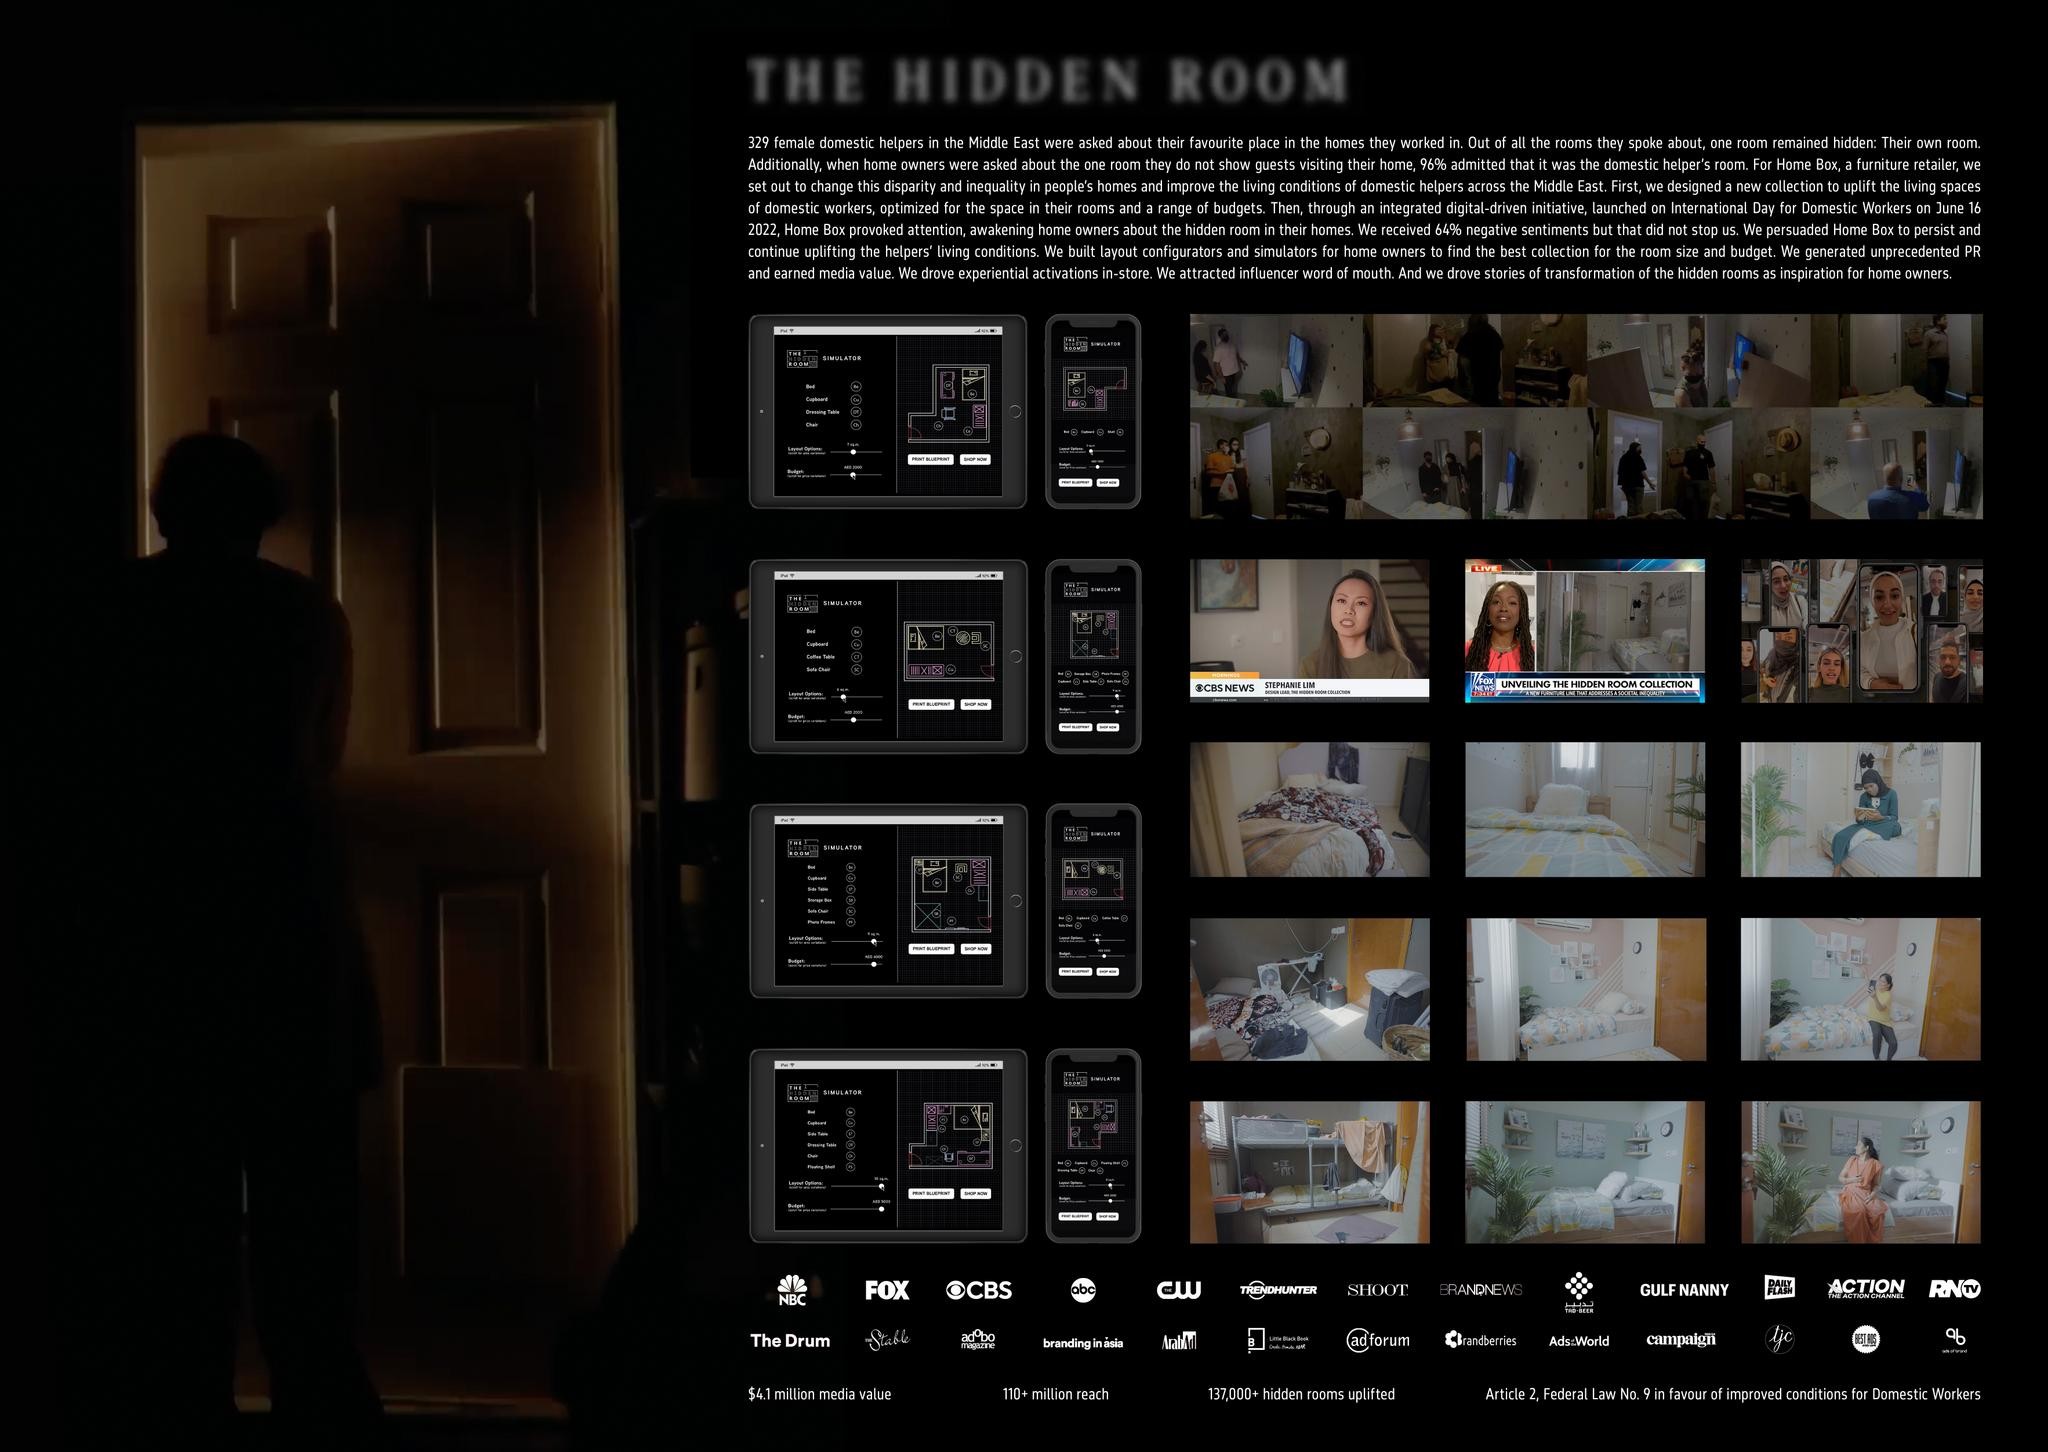 THE HIDDEN ROOM